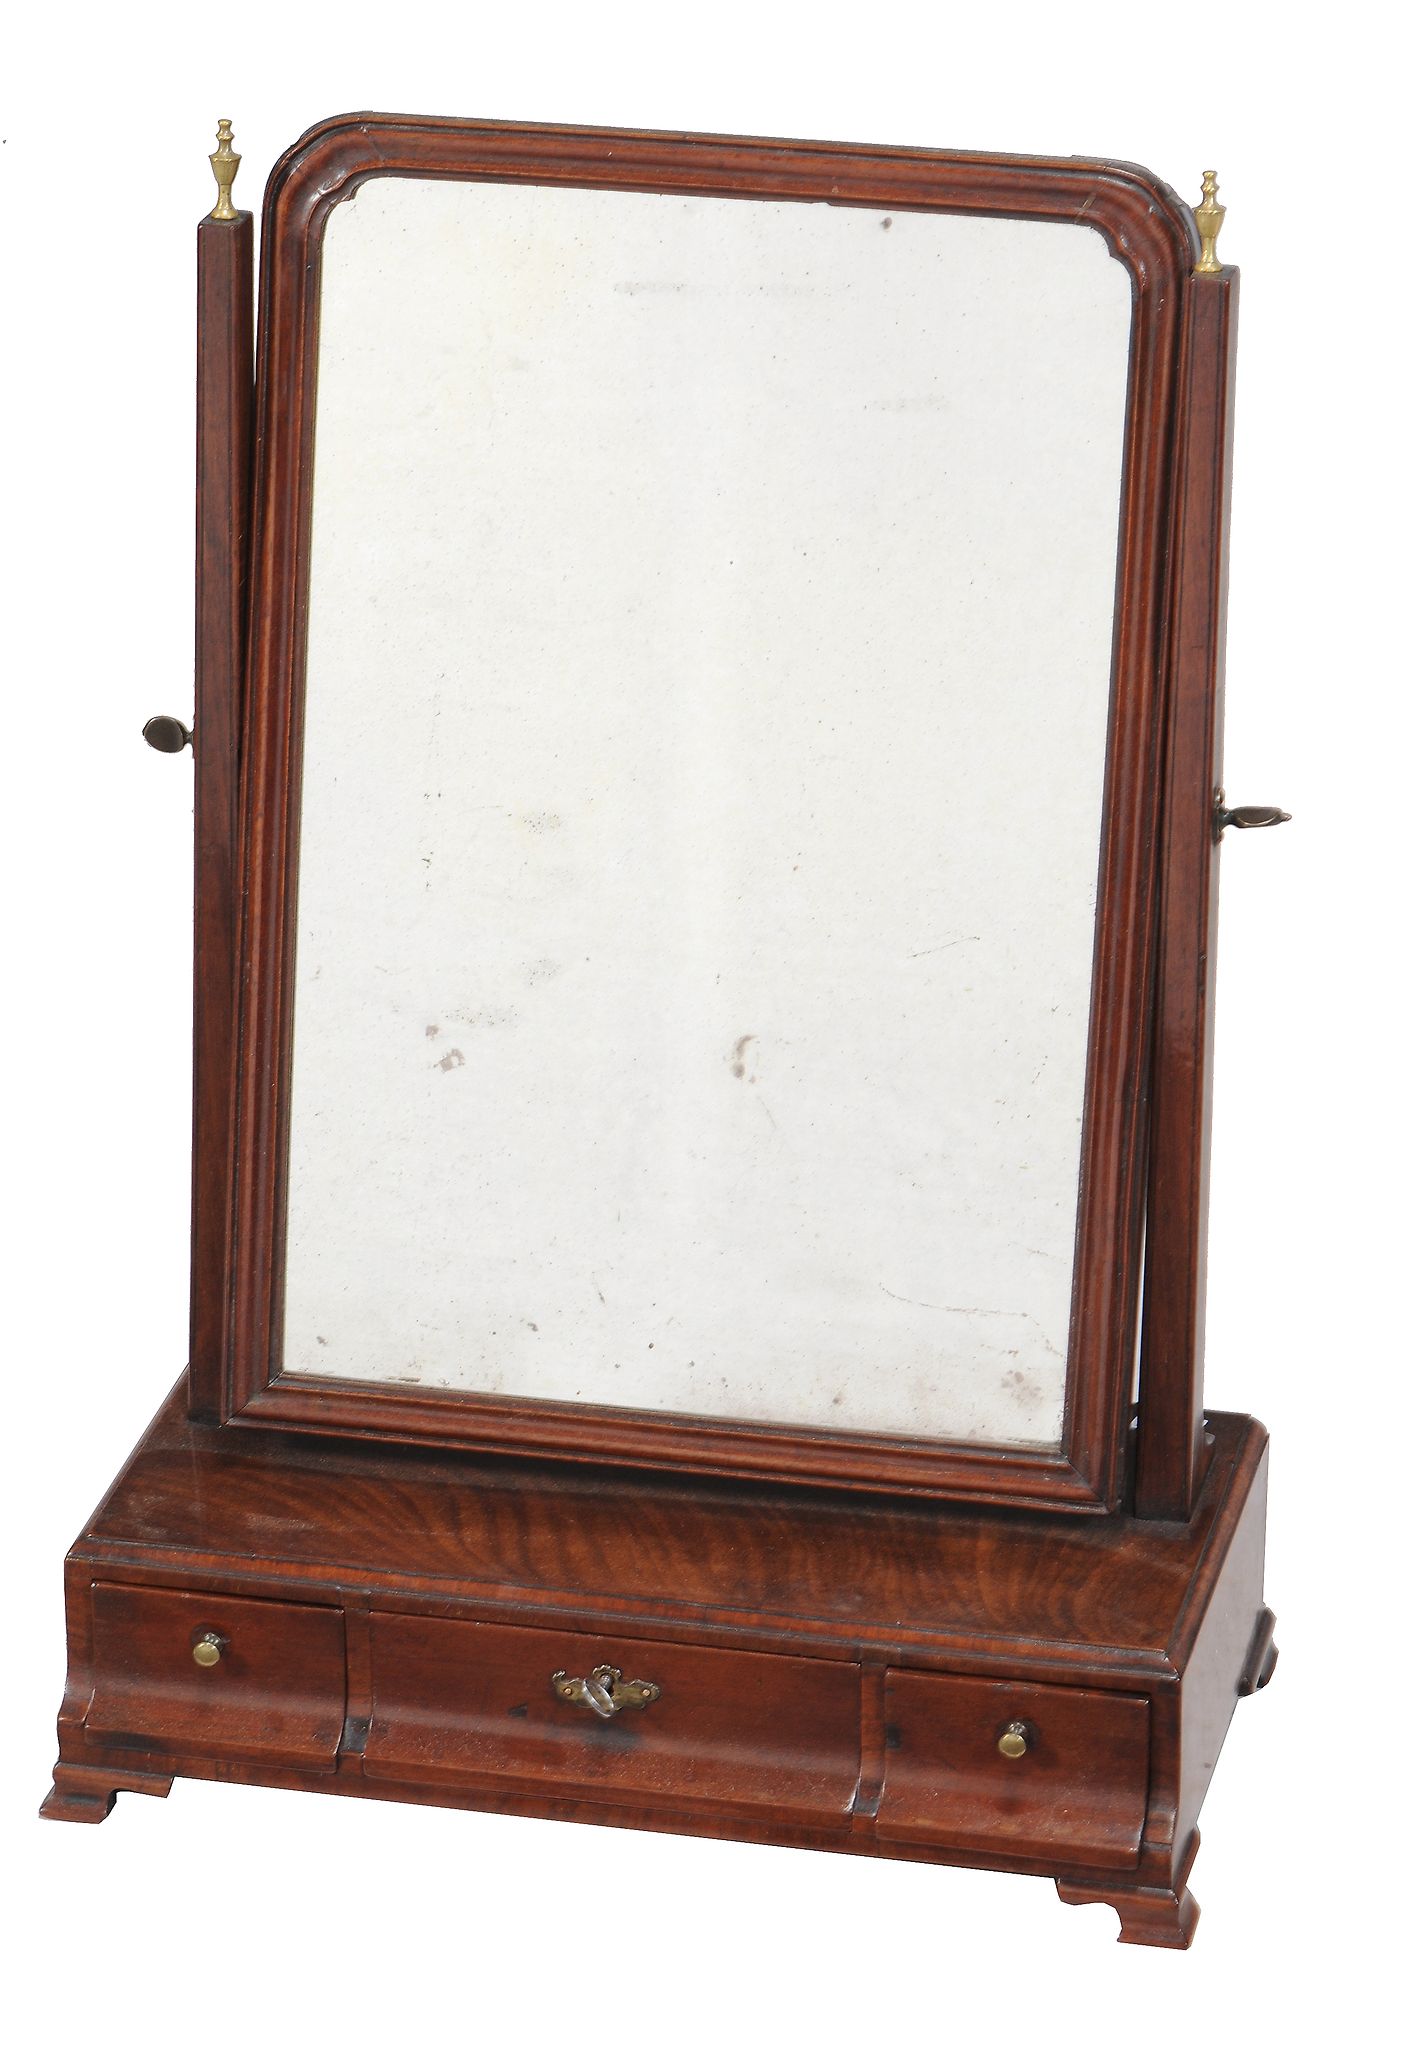 A George III mahogany dressing mirror, circa 1770, 61cm high, 42cm wide, 21cm deep